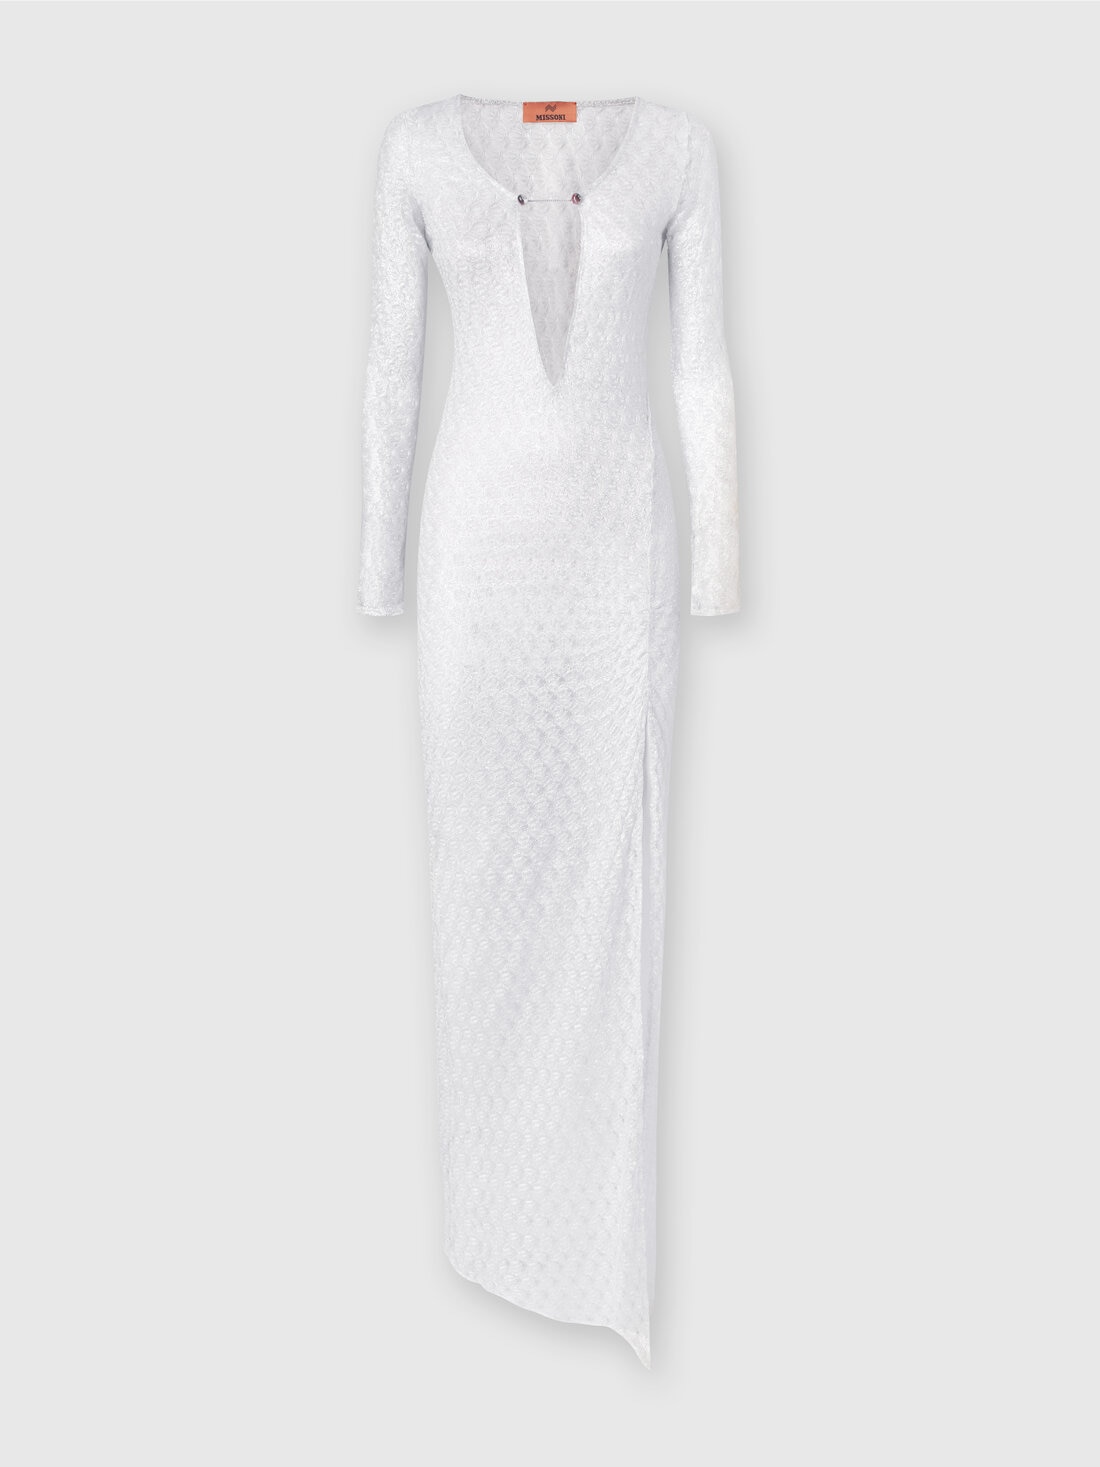 Langes Kleid in Spitzenoptik mit V-Ausschnitt und Applikationen, Weiß  - MS24SQ01BR00TC14001 - 0